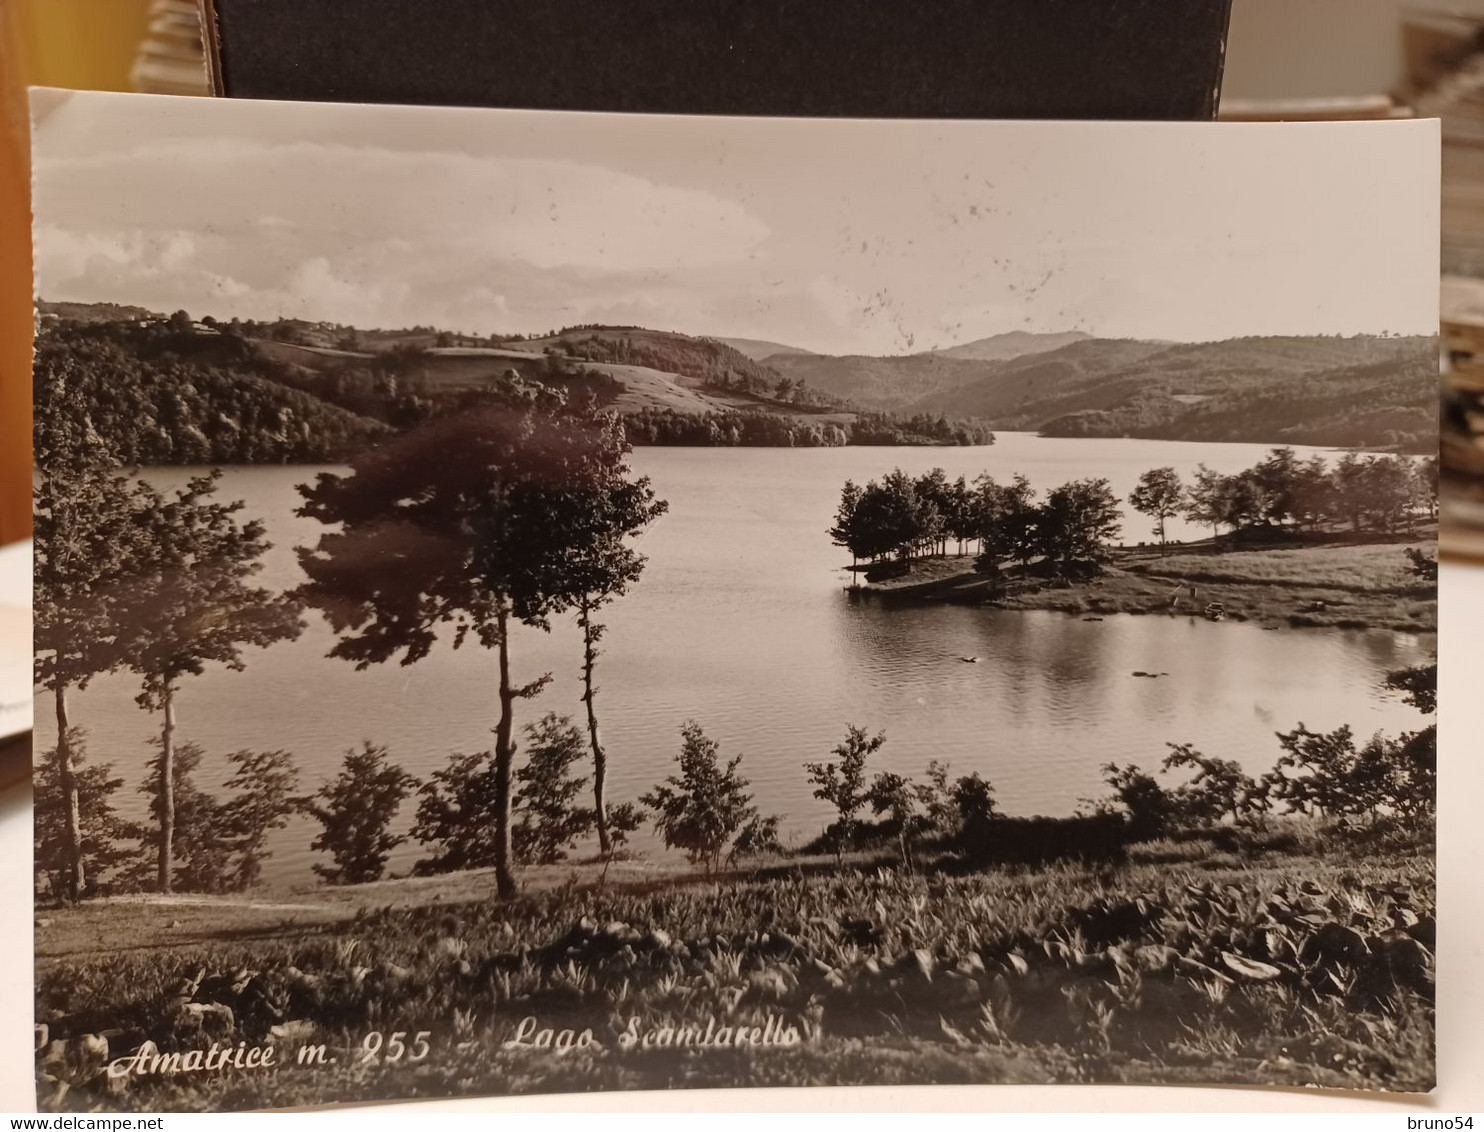 2 Cartoline Amatrice Provincia Rieti, Lago Scandarello, Vista Dell'Istituto Maschile Anni 50 - Rieti